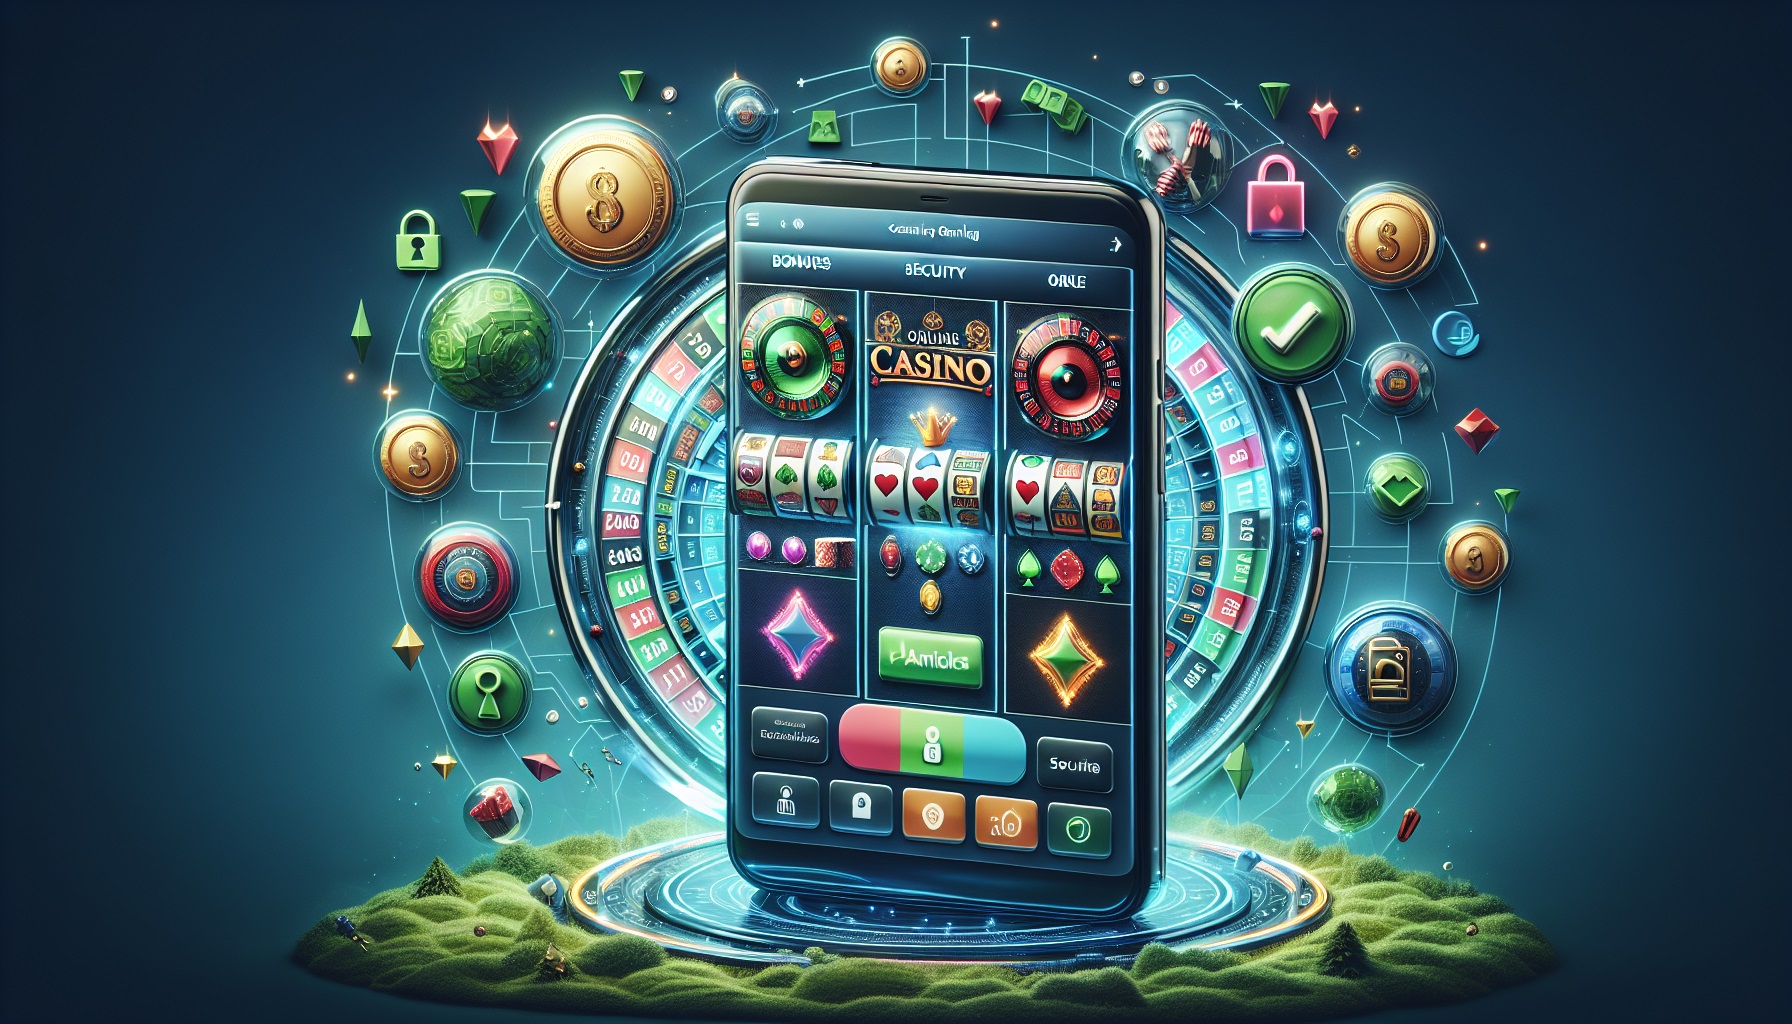 Jouer en ligne en toute sécurité sur Spinanga Casino : conseils pour les amateurs de casino mobile